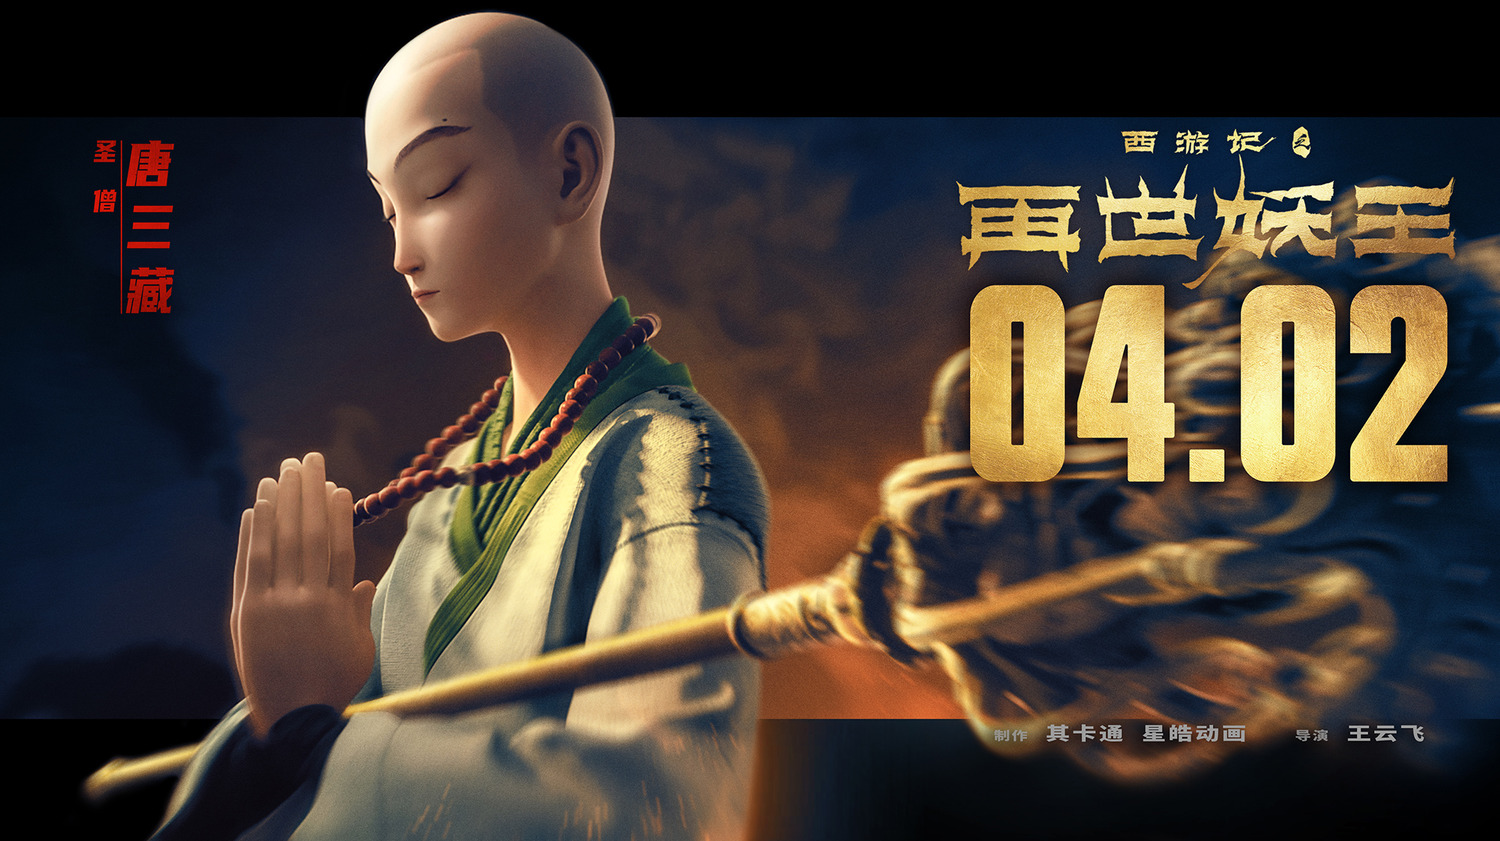 Extra Large Movie Poster Image for Xi You Ji Zhi Zai Shi Yao Wang (#14 of 21)